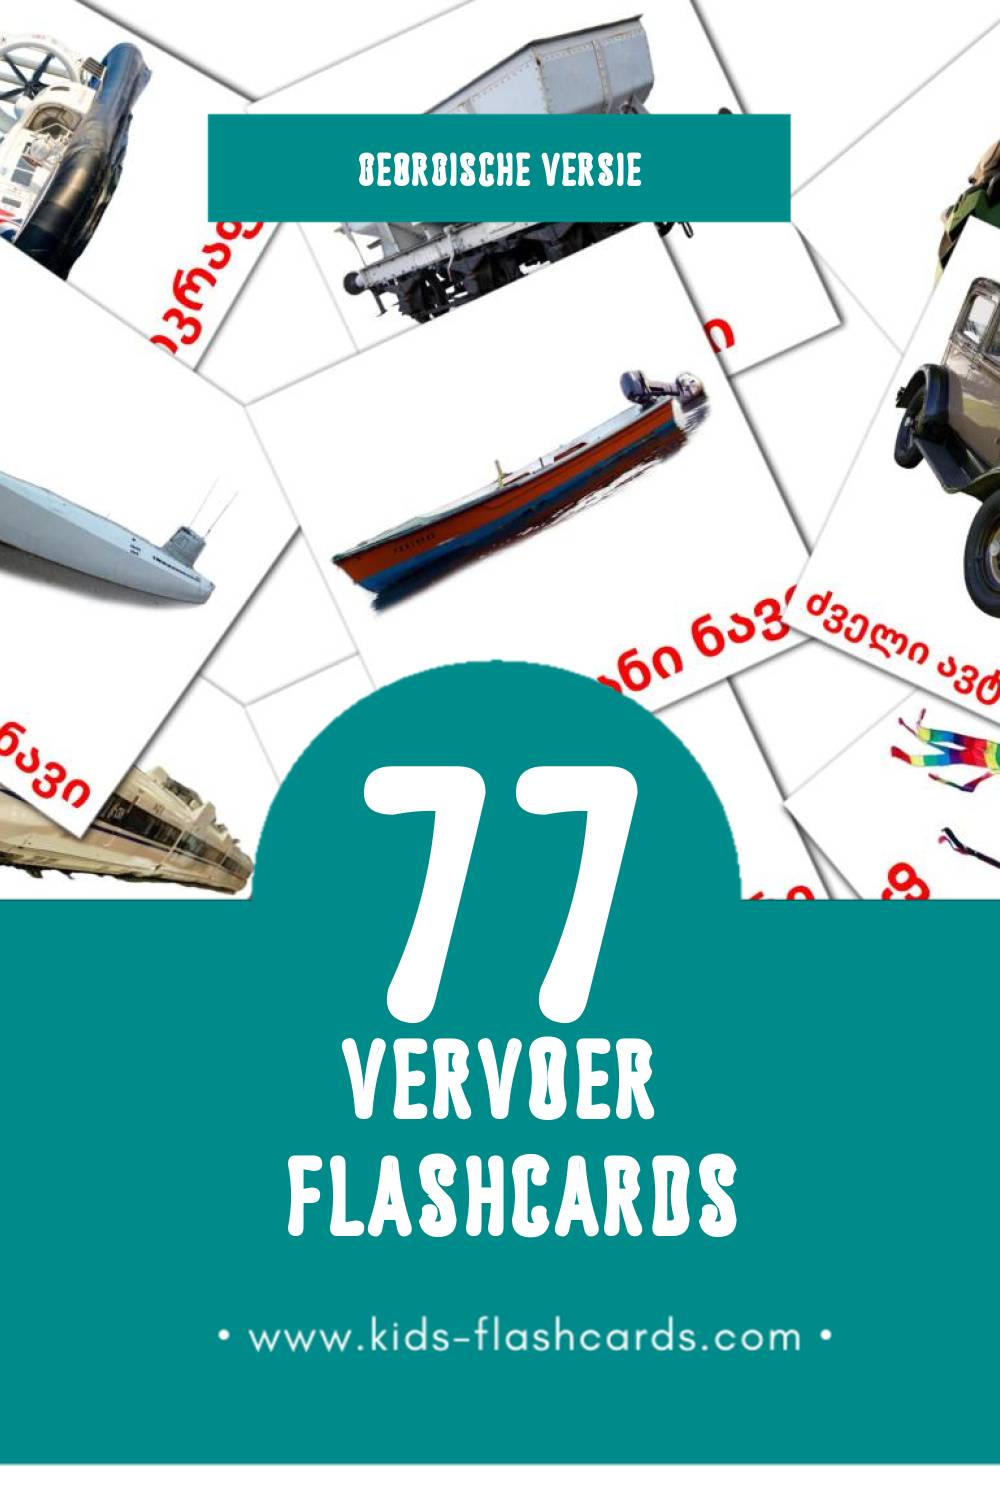 Visuele ტრანსპორტი Flashcards voor Kleuters (77 kaarten in het Georgisch)